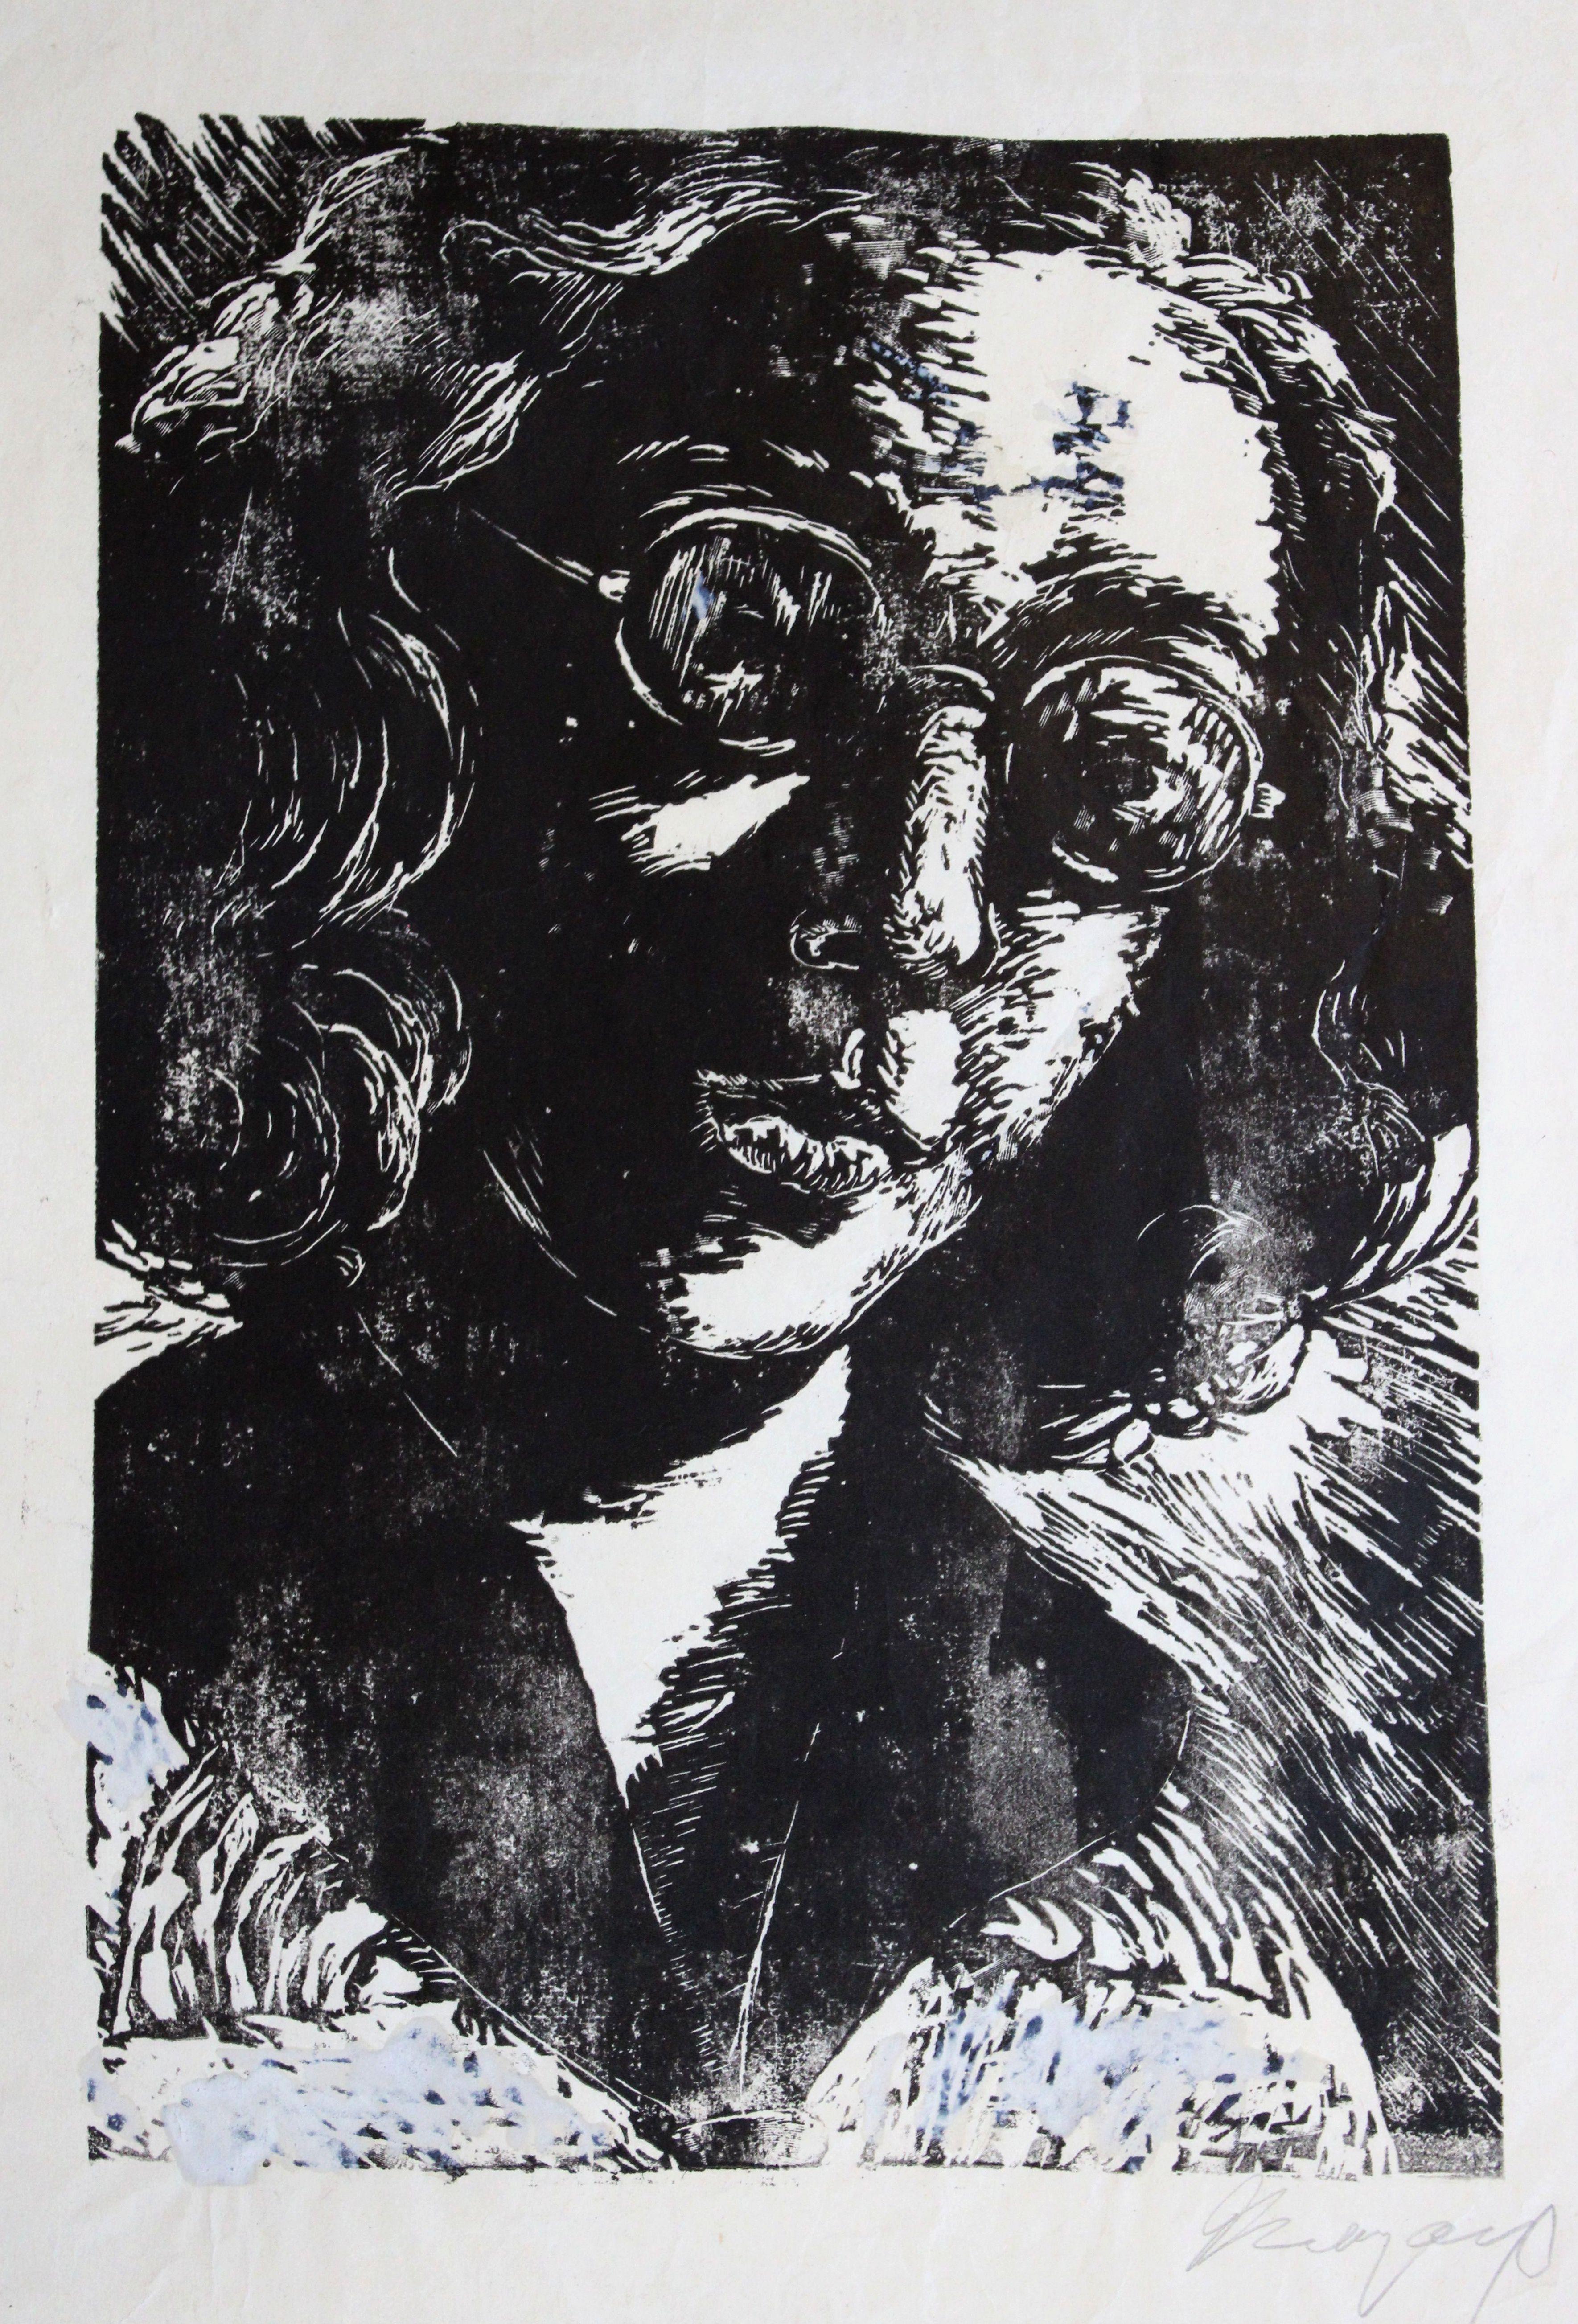 Self-portrait. Paper, linocut, 31x21.5 cm